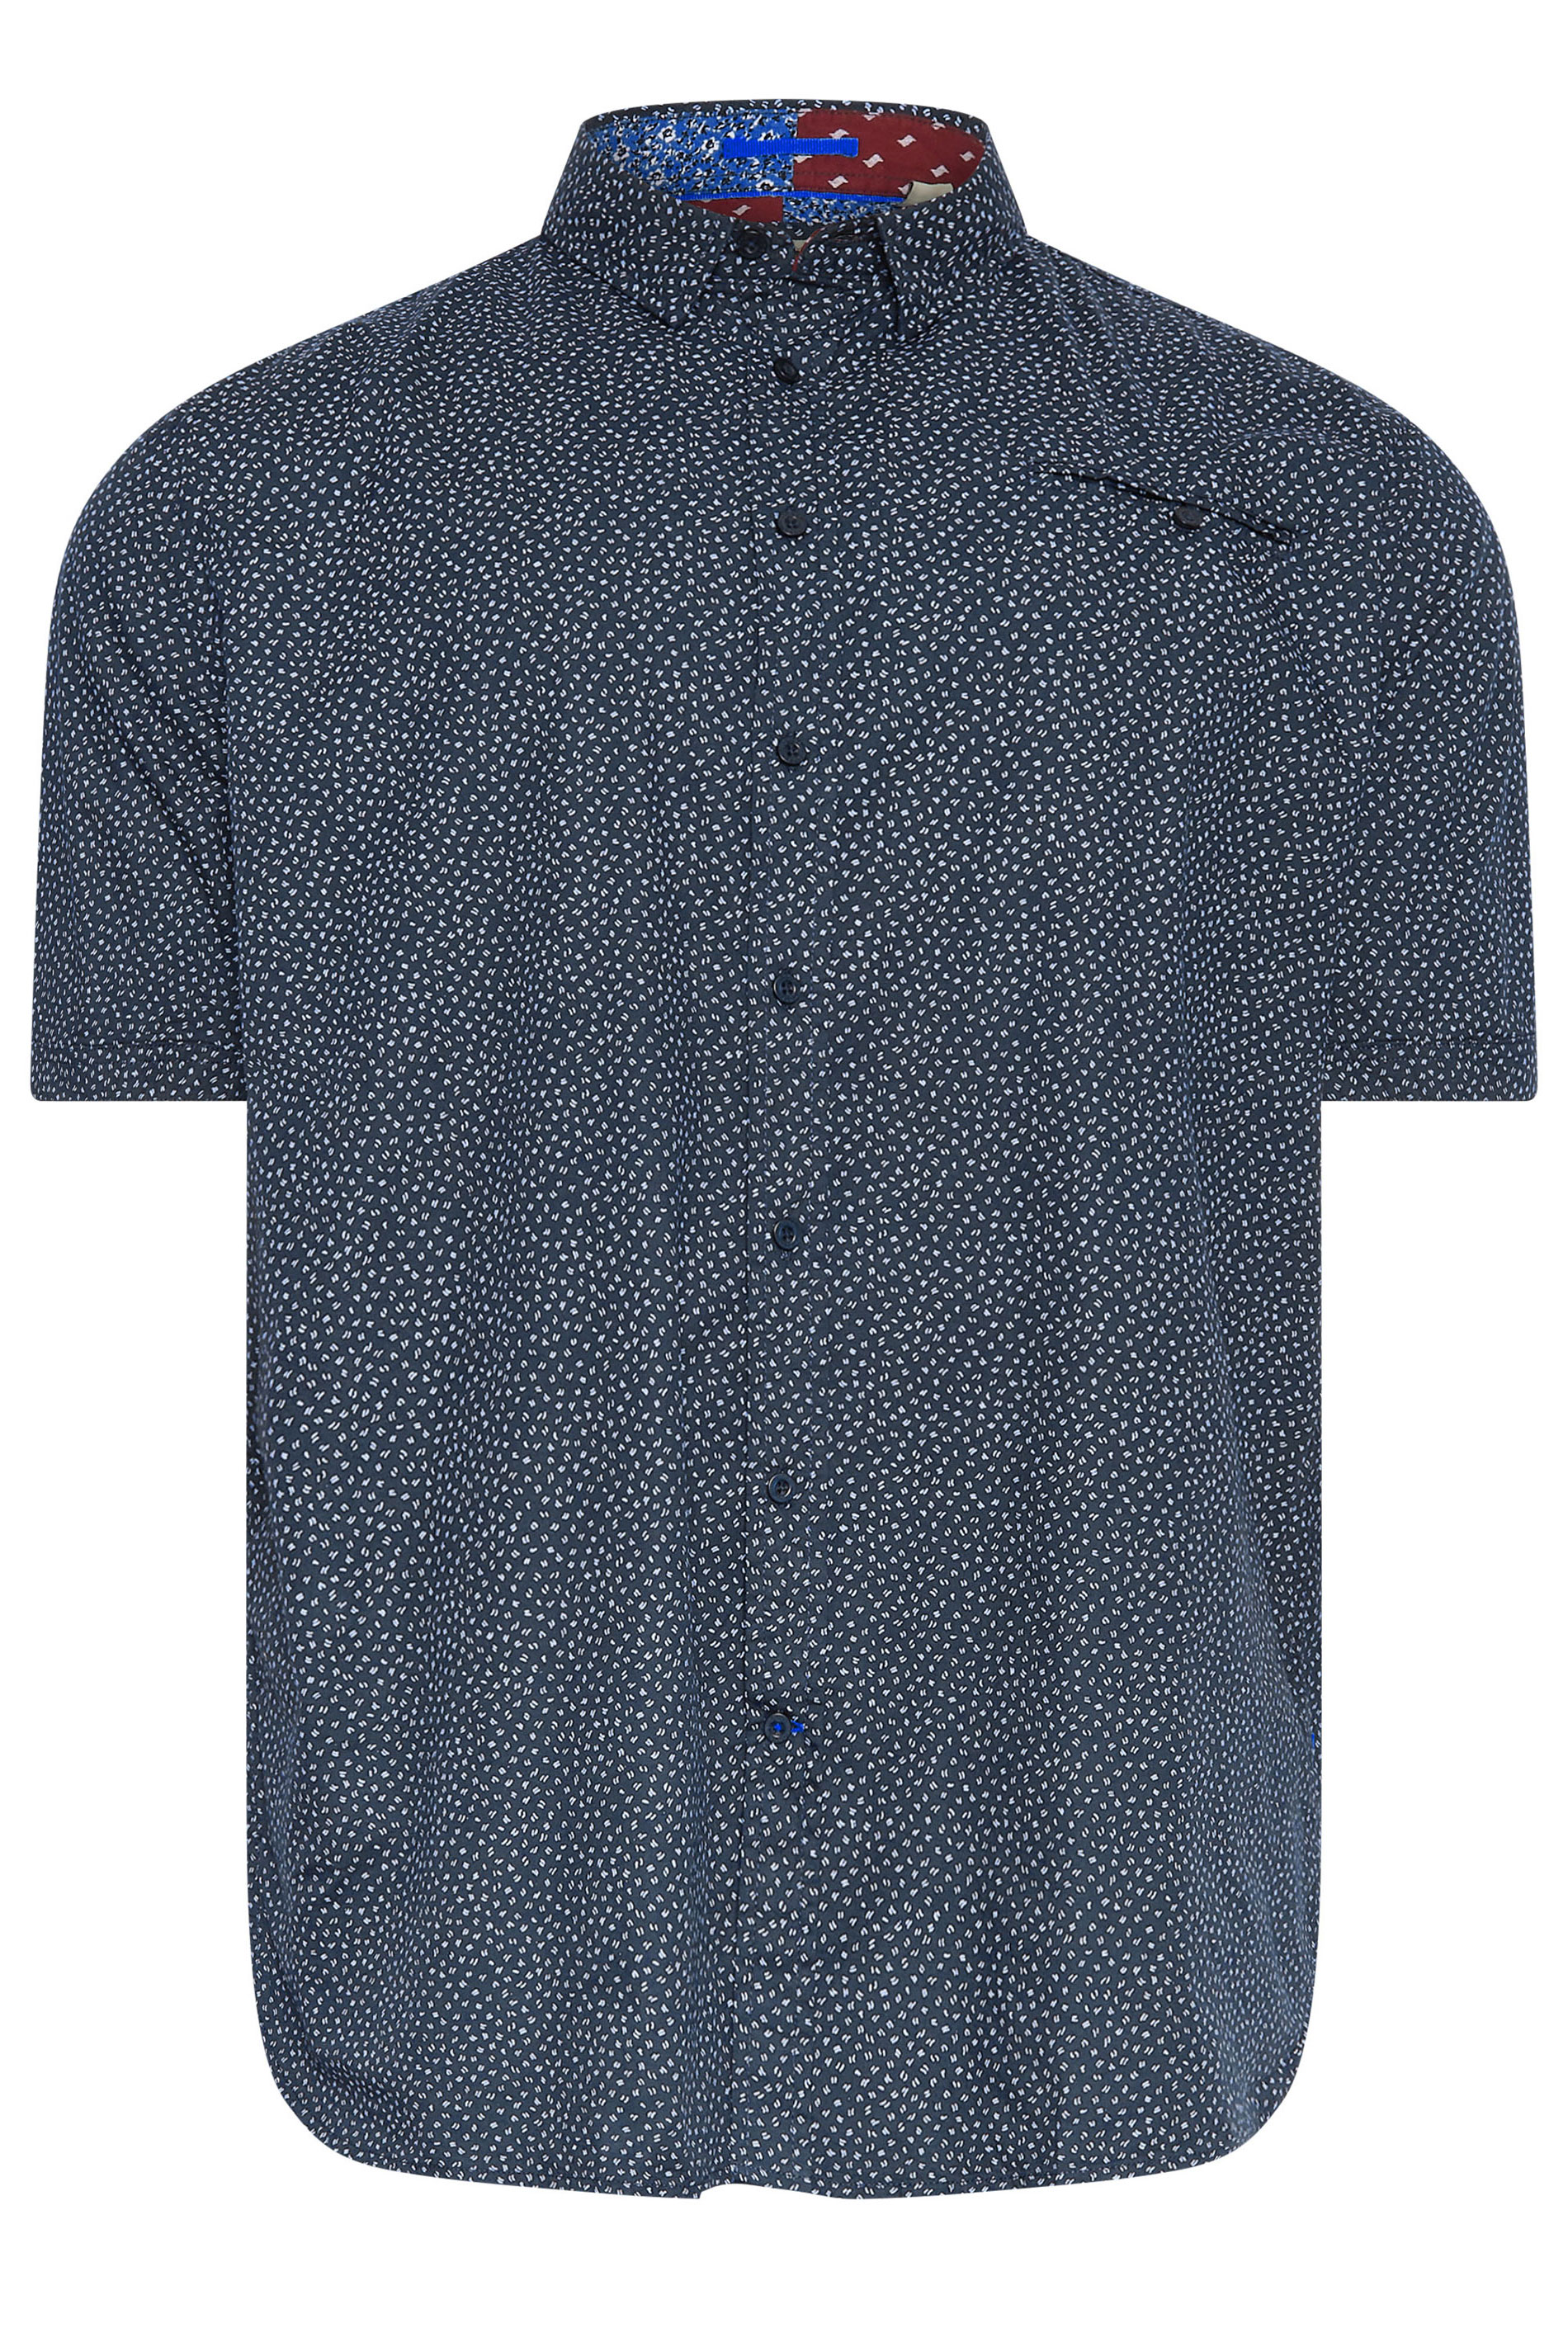 D555 Big & Tall Navy Blue Micro Print Short Sleeve Shirt | BadRhino 3